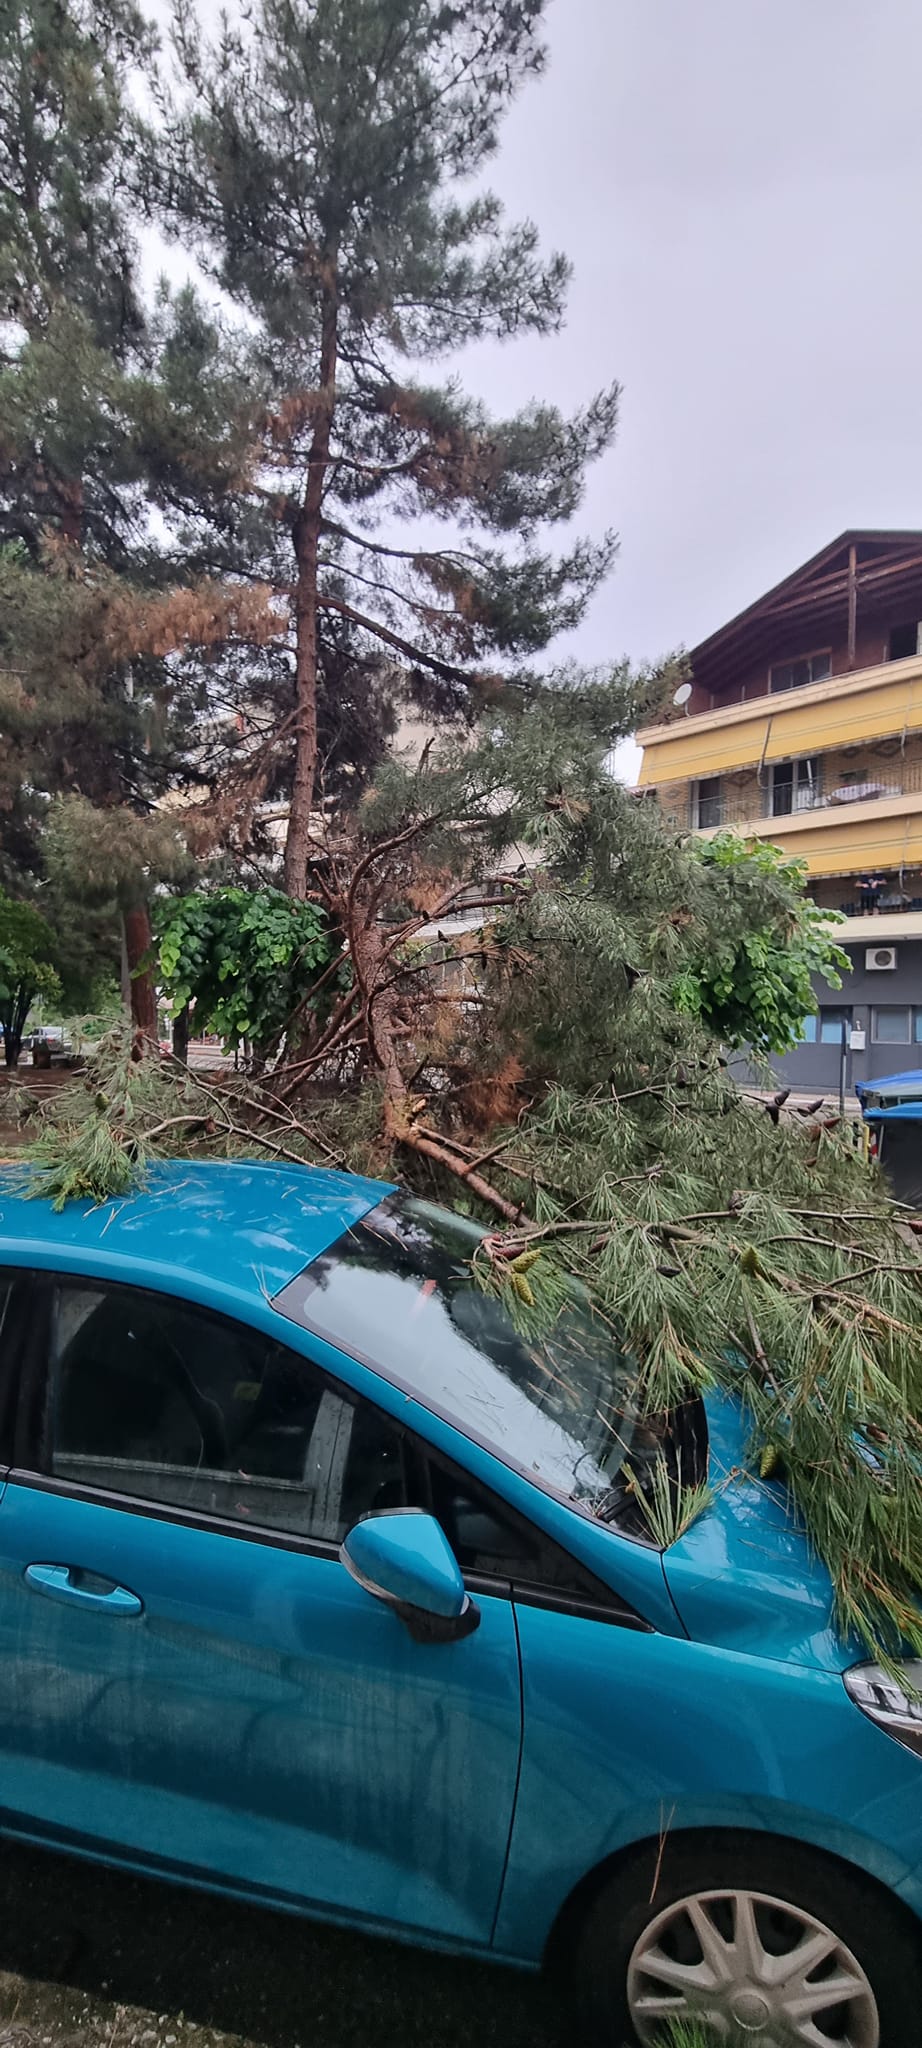 Πτολεμαϊδα: Δέντρο έπεσε σε πάρκο - Έπαιζαν παιδιά στο σημείο ΦΩΤΟ - ΒΙΝΤΕΟ